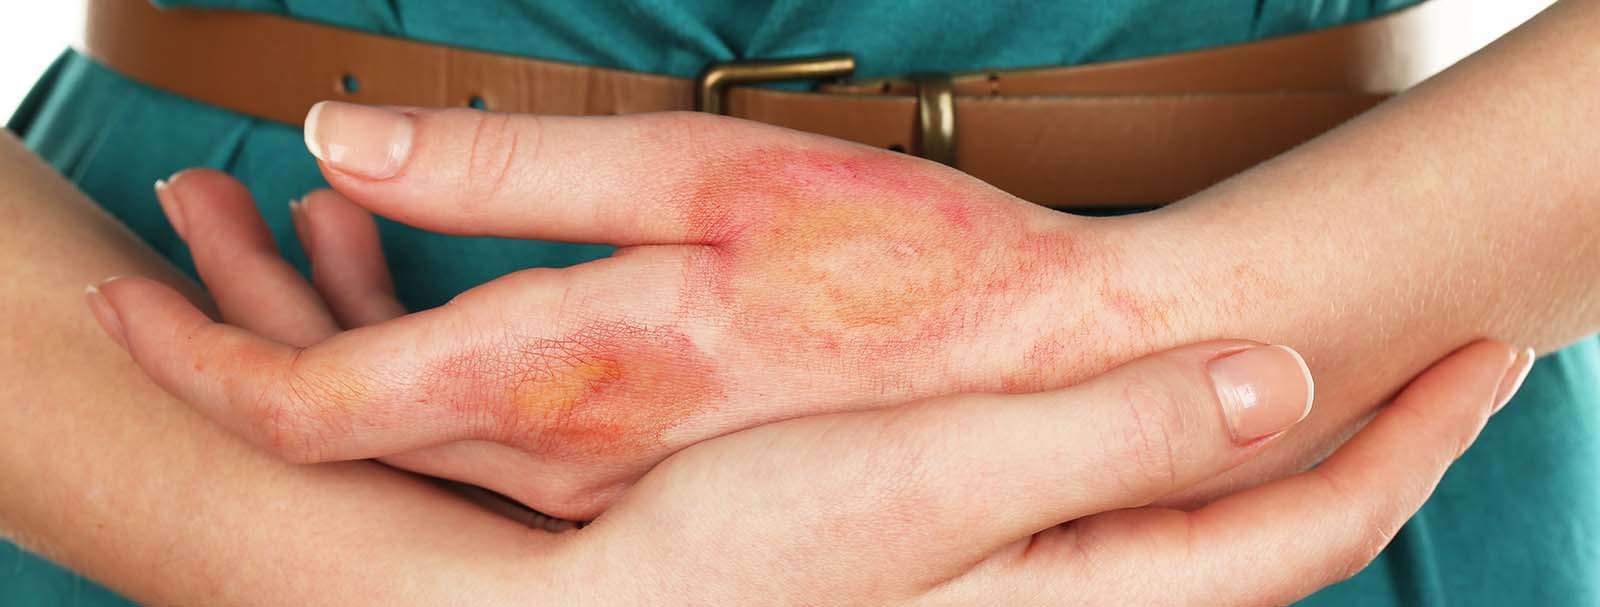 kezét vörös foltok és égési sérülések borítják